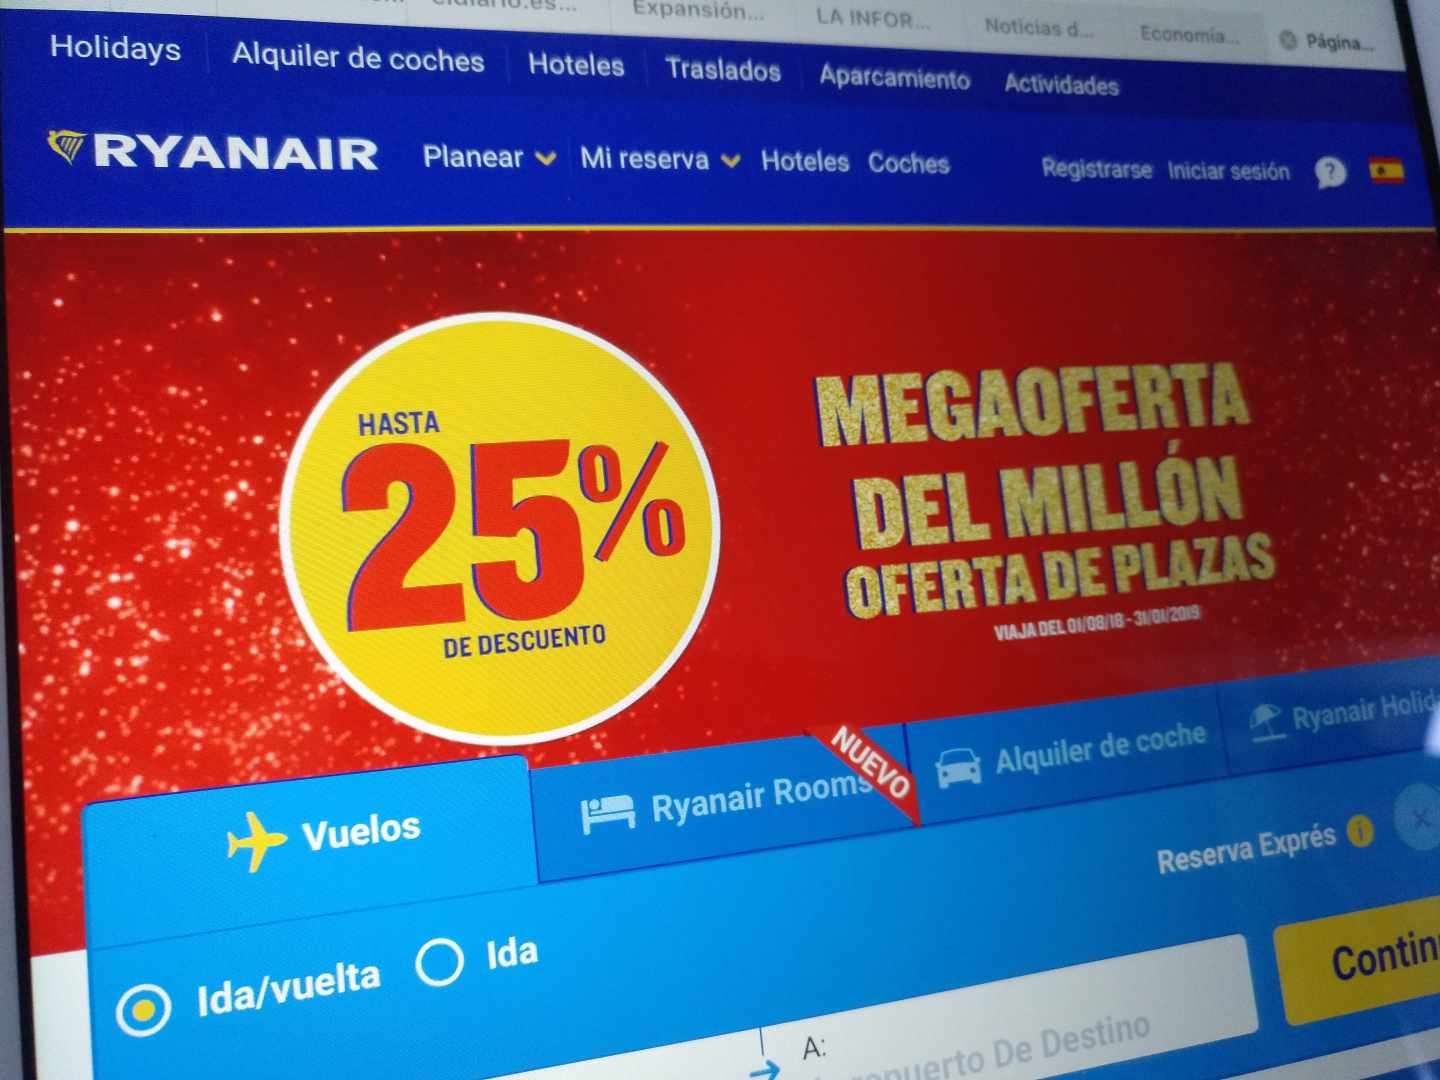 Promoción comercial de Ryanair en su web.